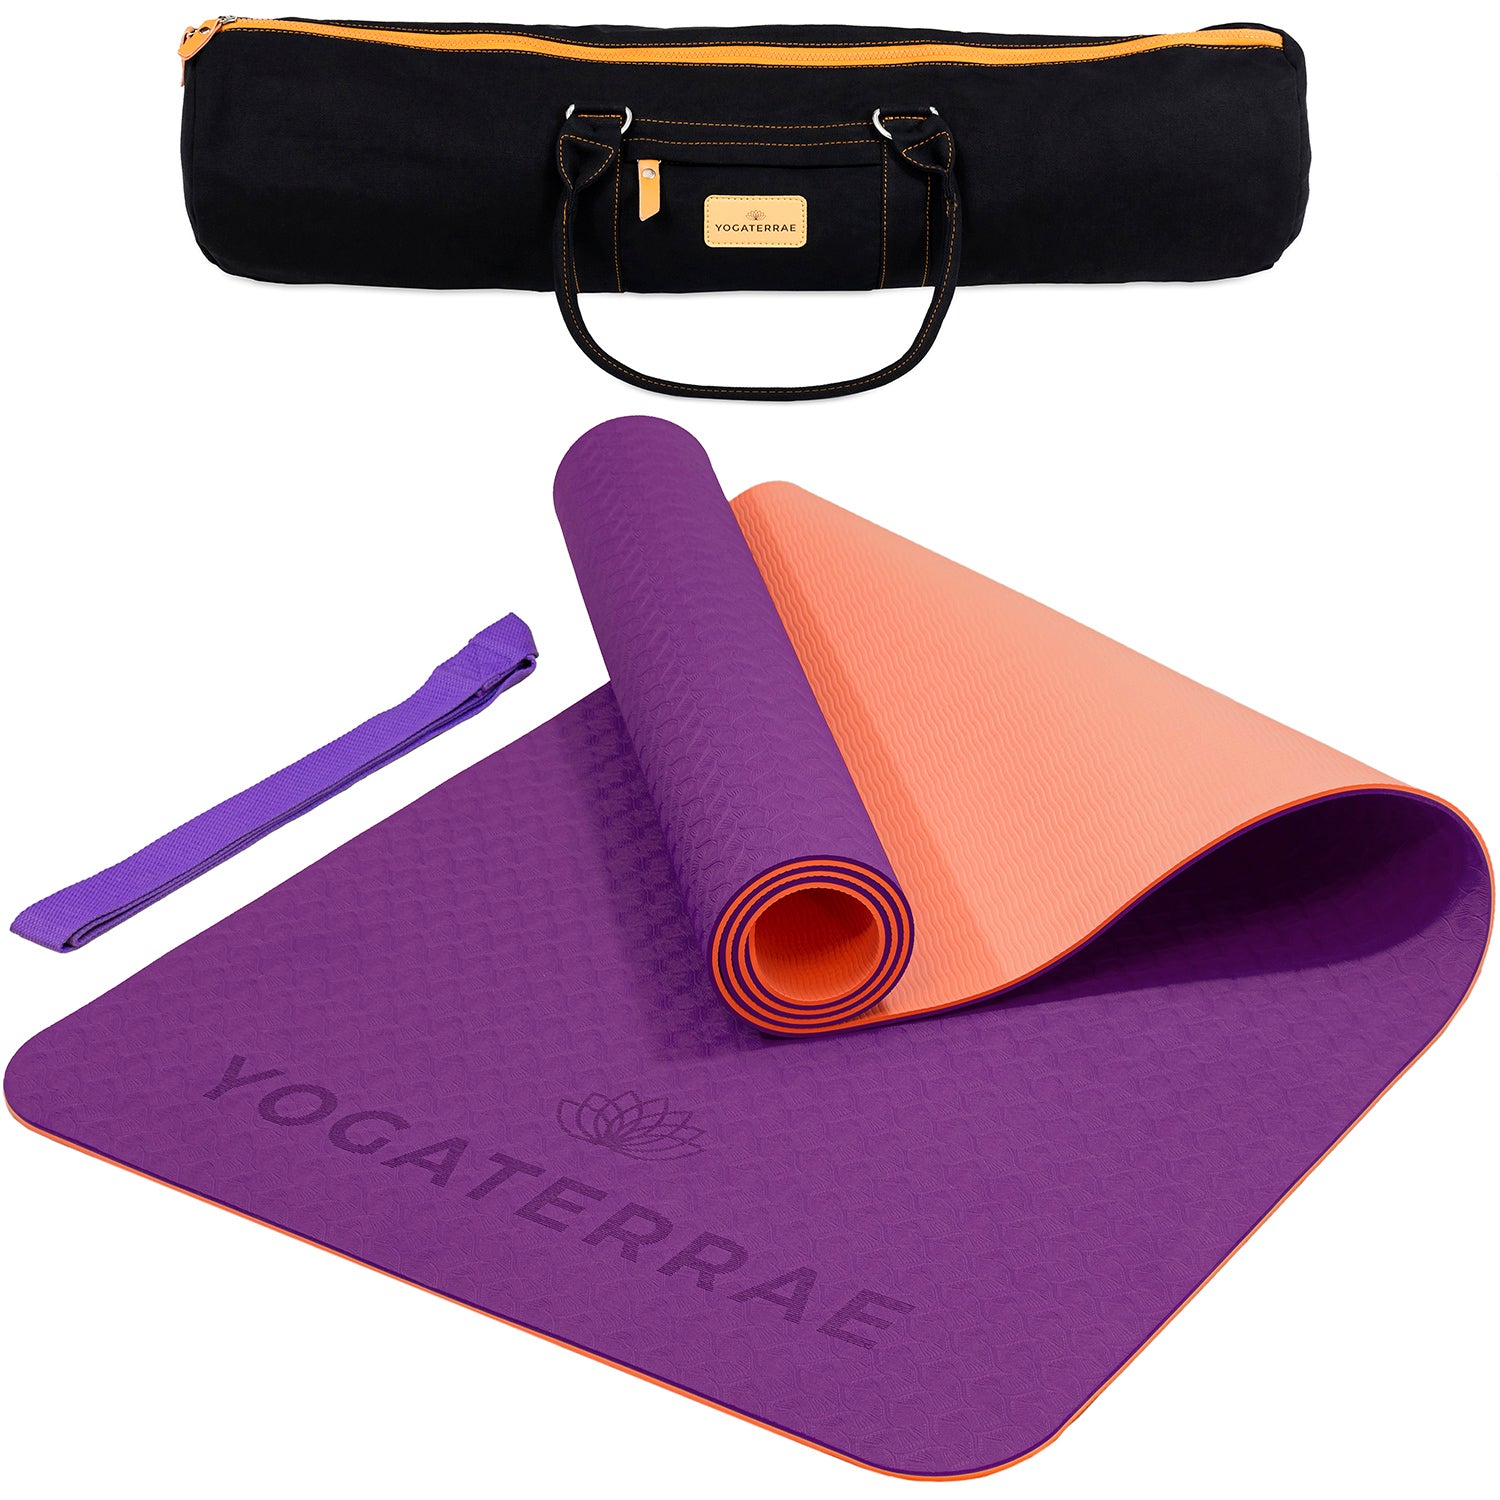 Tapis yoga antidérapant épais écologique TPE violet rose + sac – YOGATERRAE